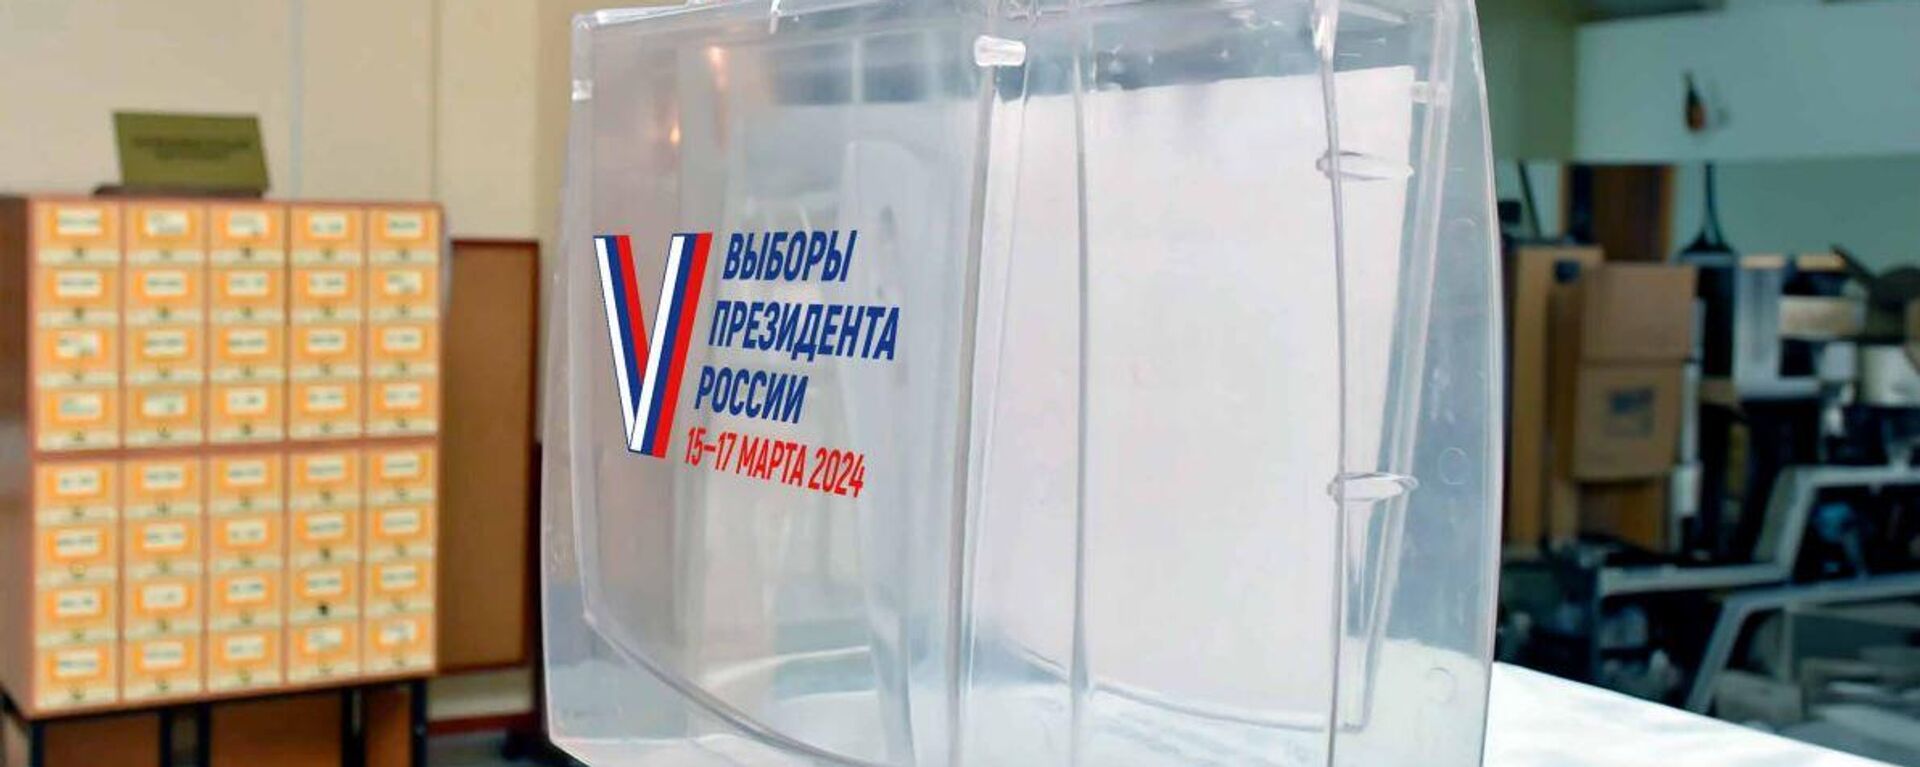 15-17 марта 2024 года состоятся выборы Президента Российской Федерации - Sputnik Казахстан, 1920, 15.03.2024